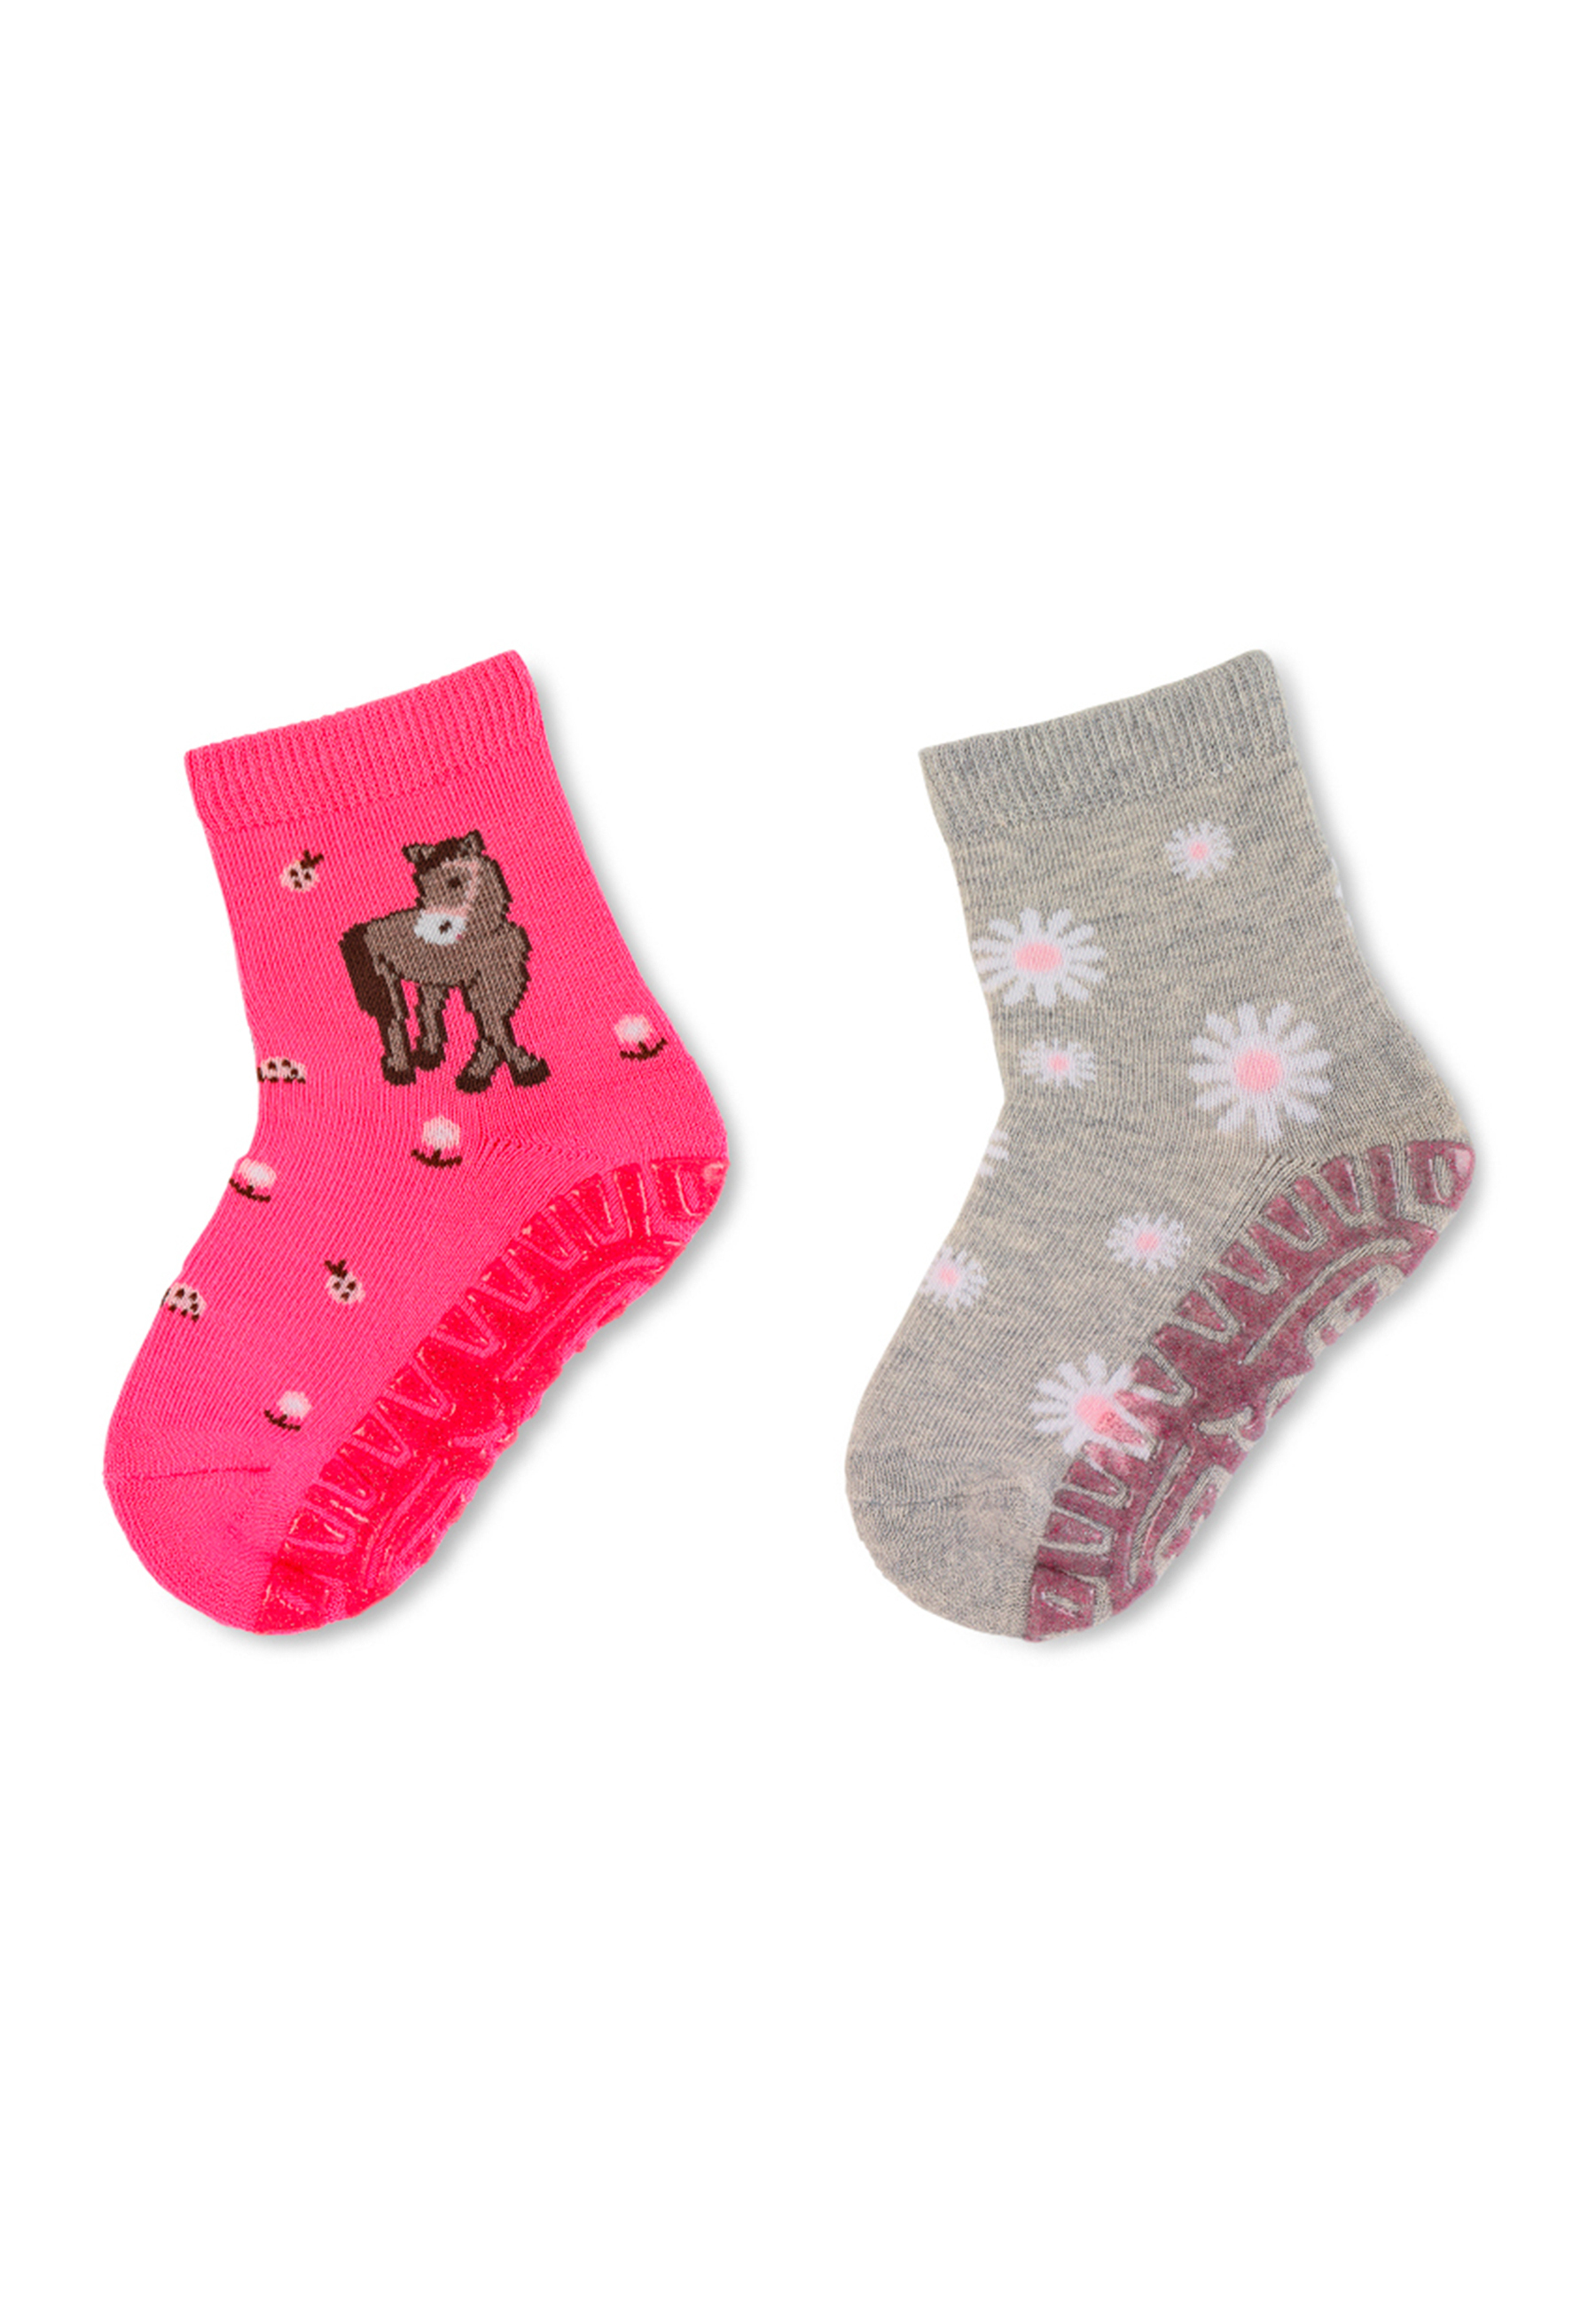 STERNTALER Socken in Pink, Grau 